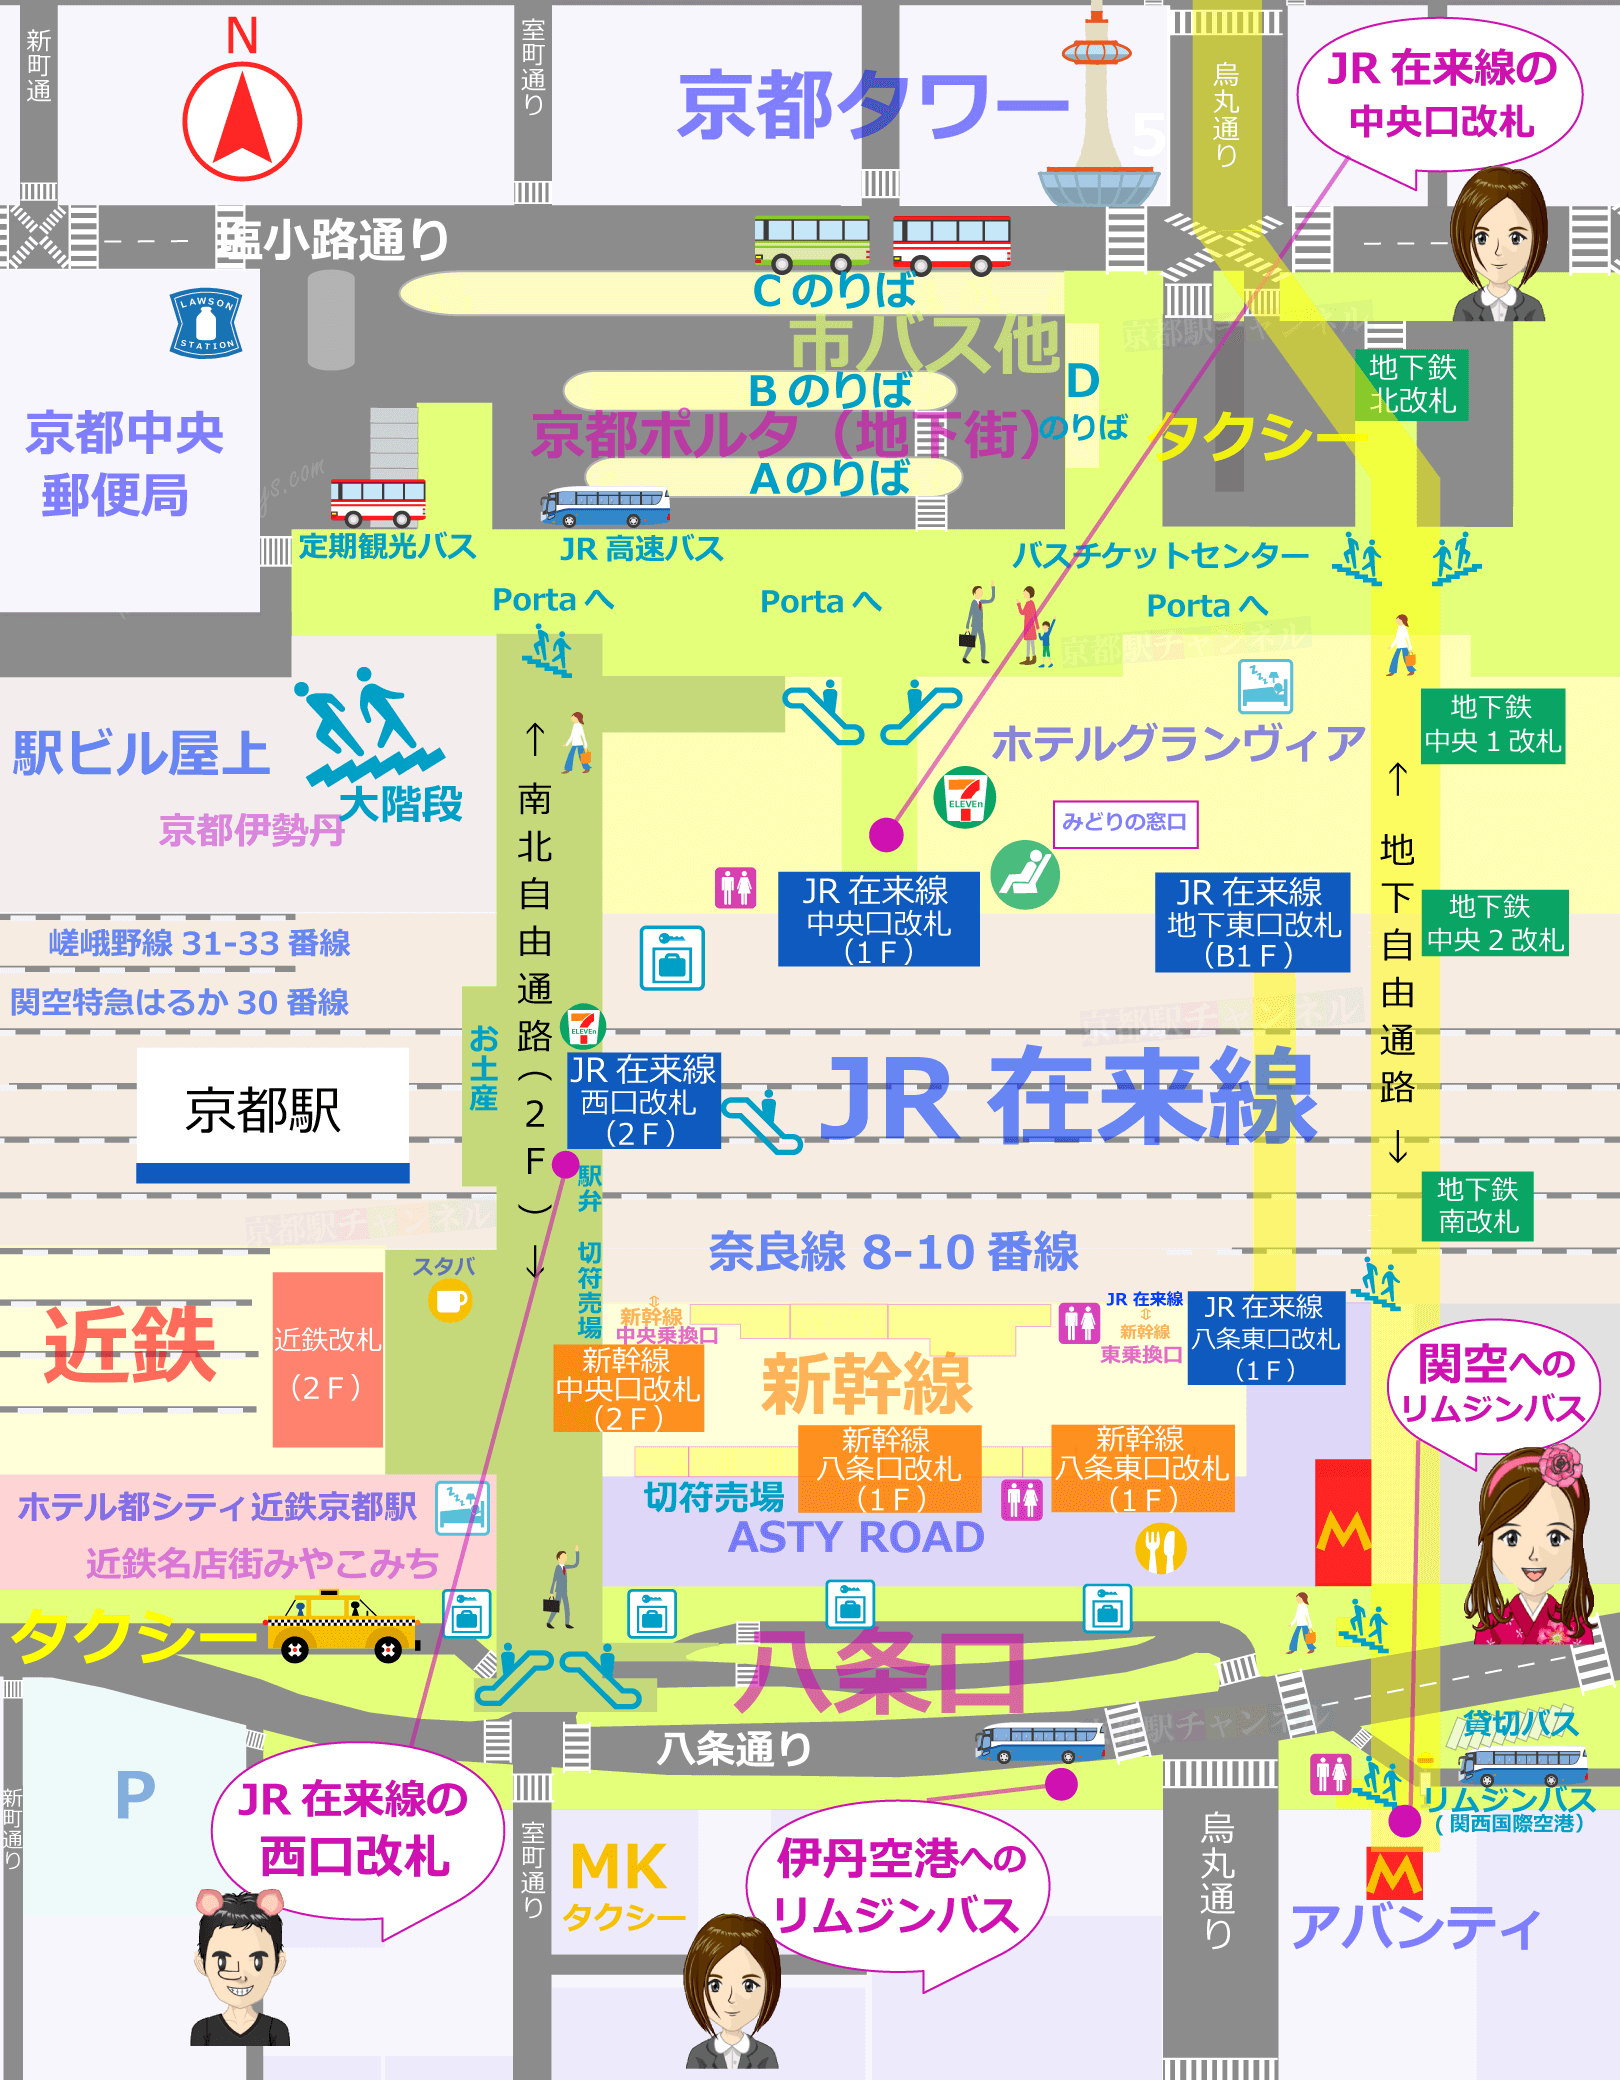 京都駅の全体図と空港へのアクセスマップ